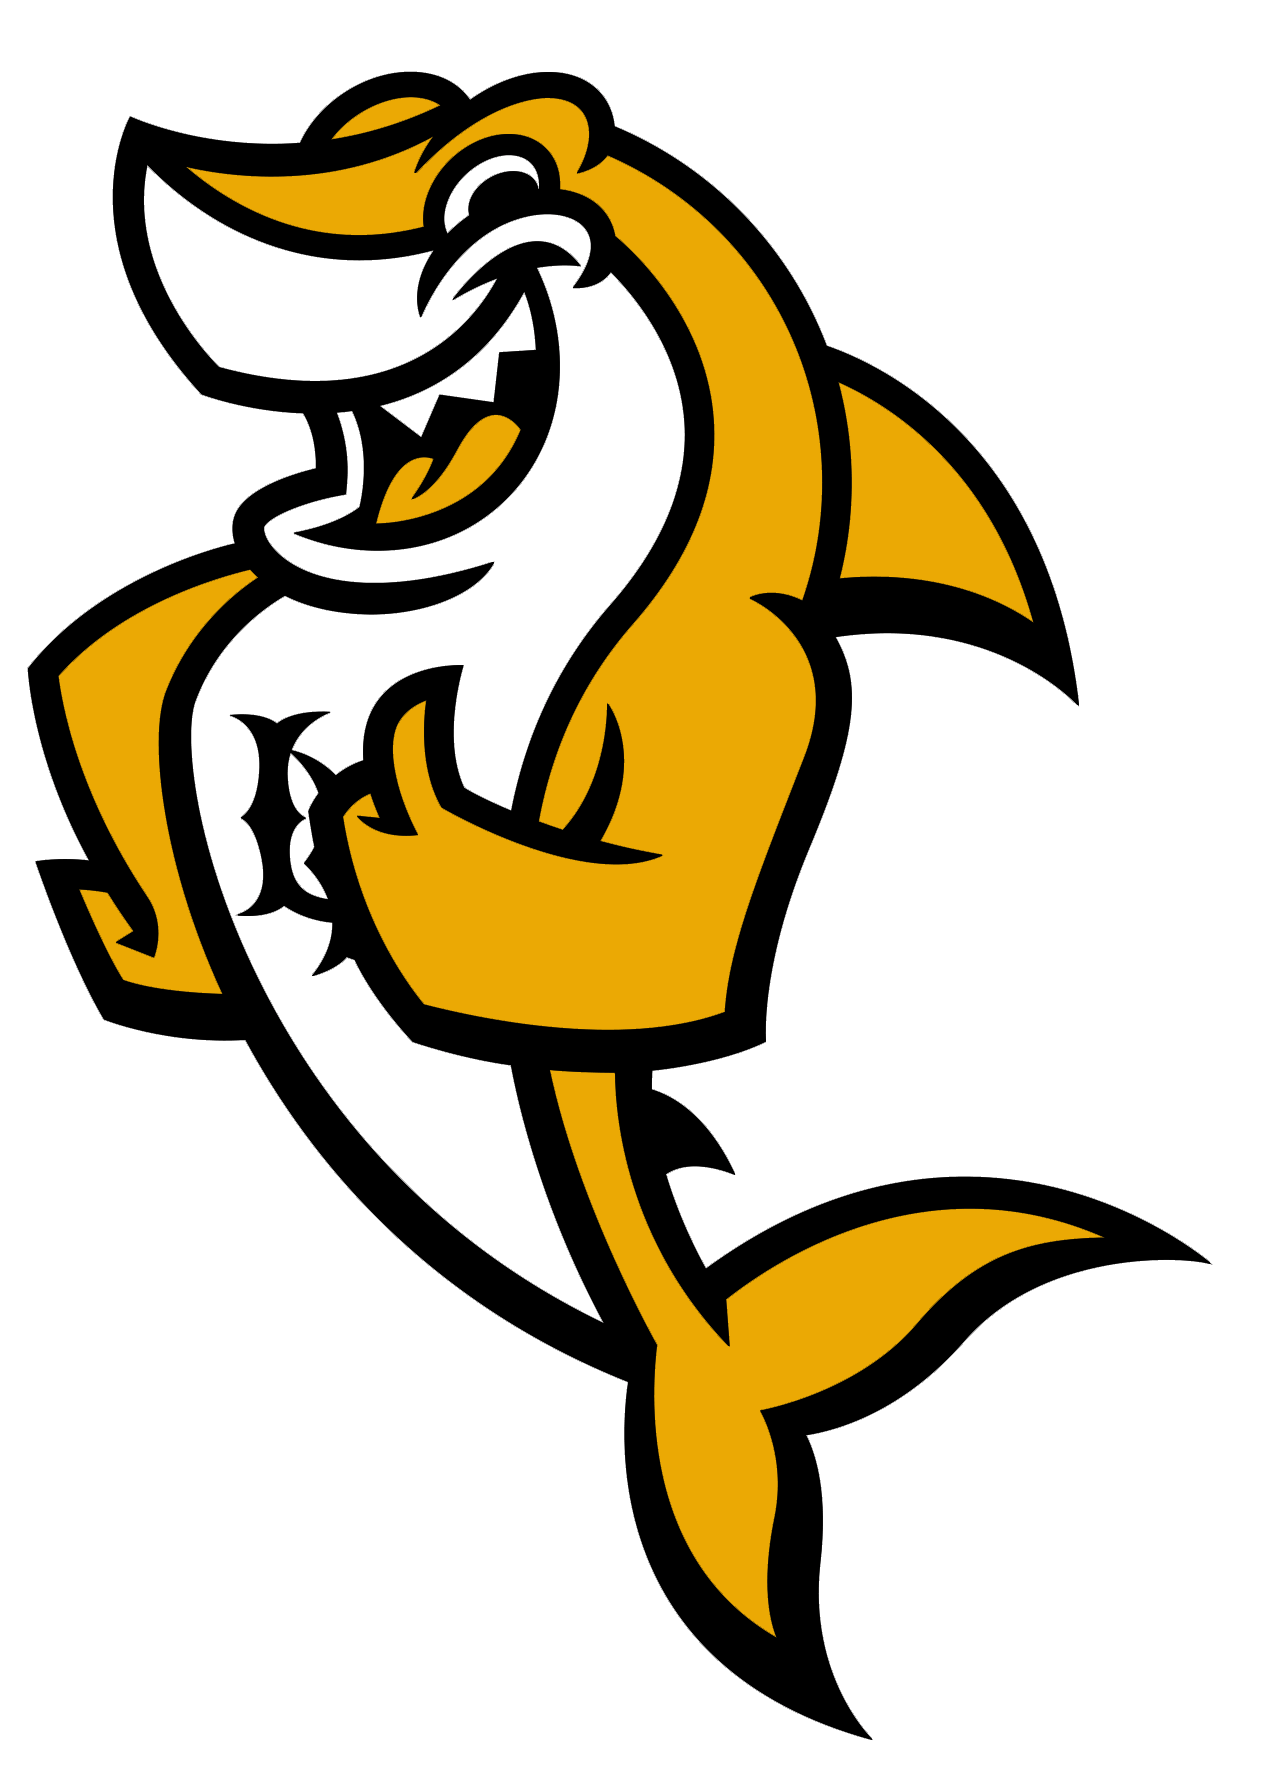 gold Elbee mascot